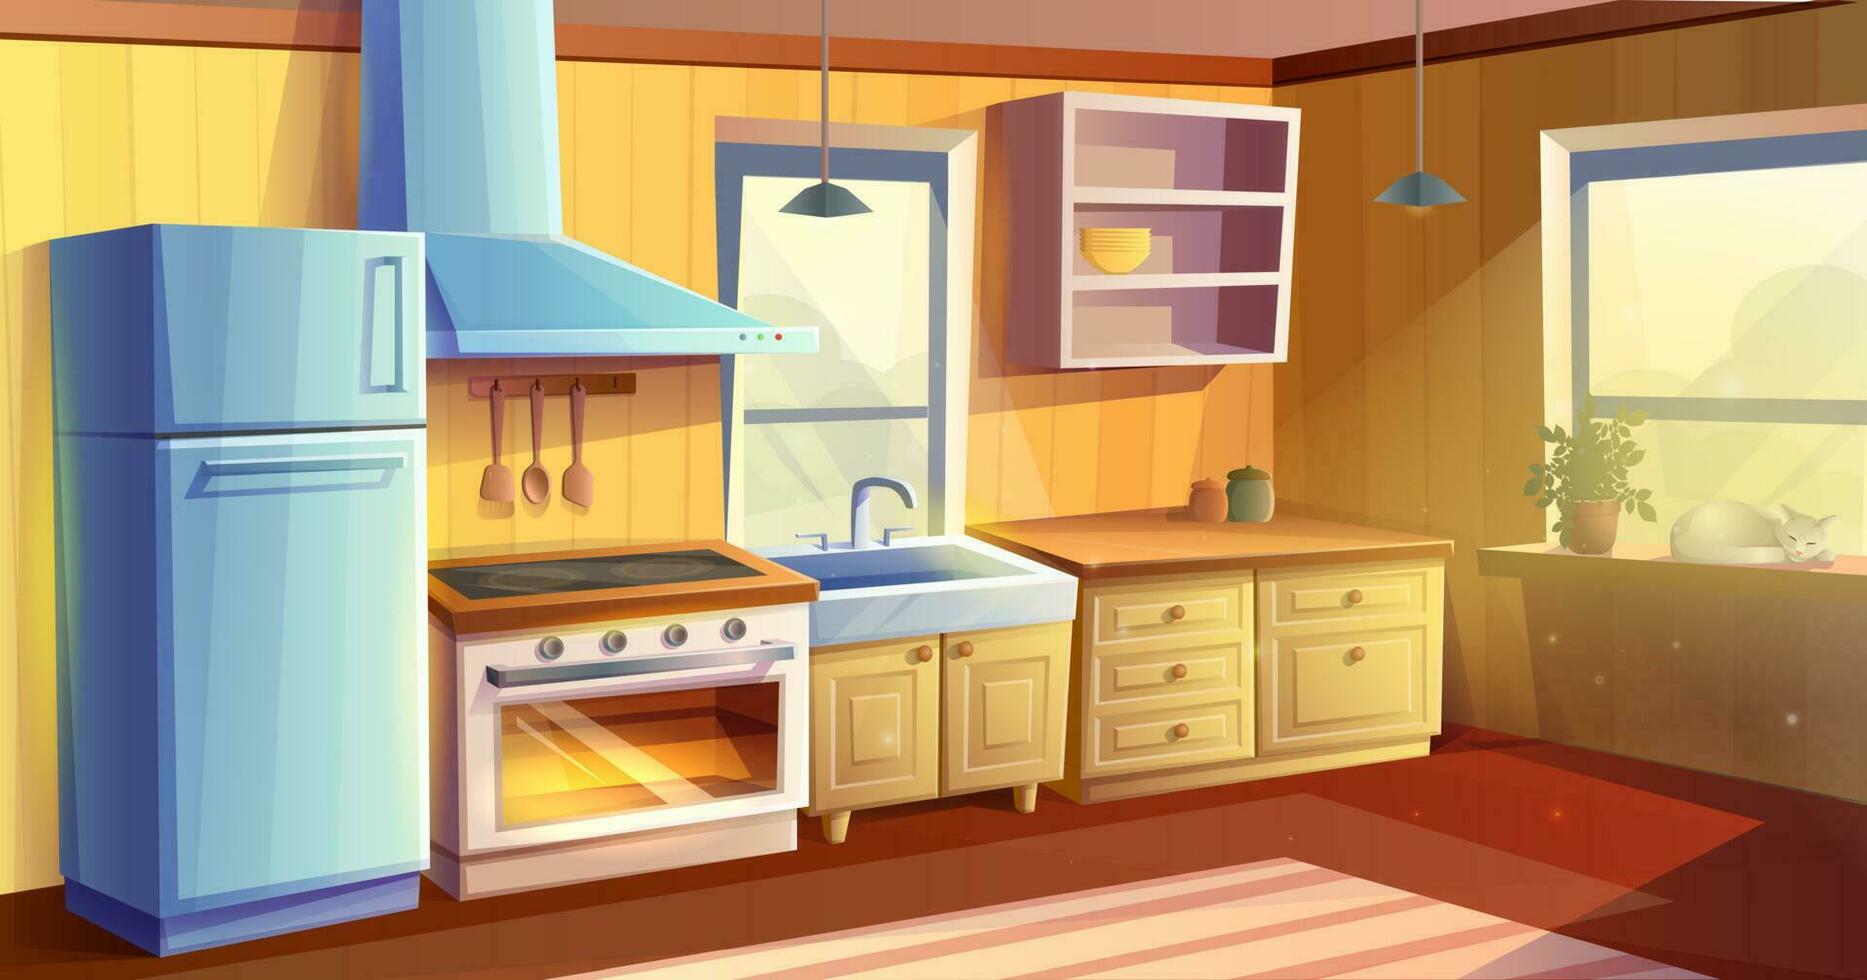 vecteur dessin animé style illustration de cuisine chambre. à manger chambre. réfrigérateur, four avec une le fourneau et plaque, couler, armoires et extracteur capot.